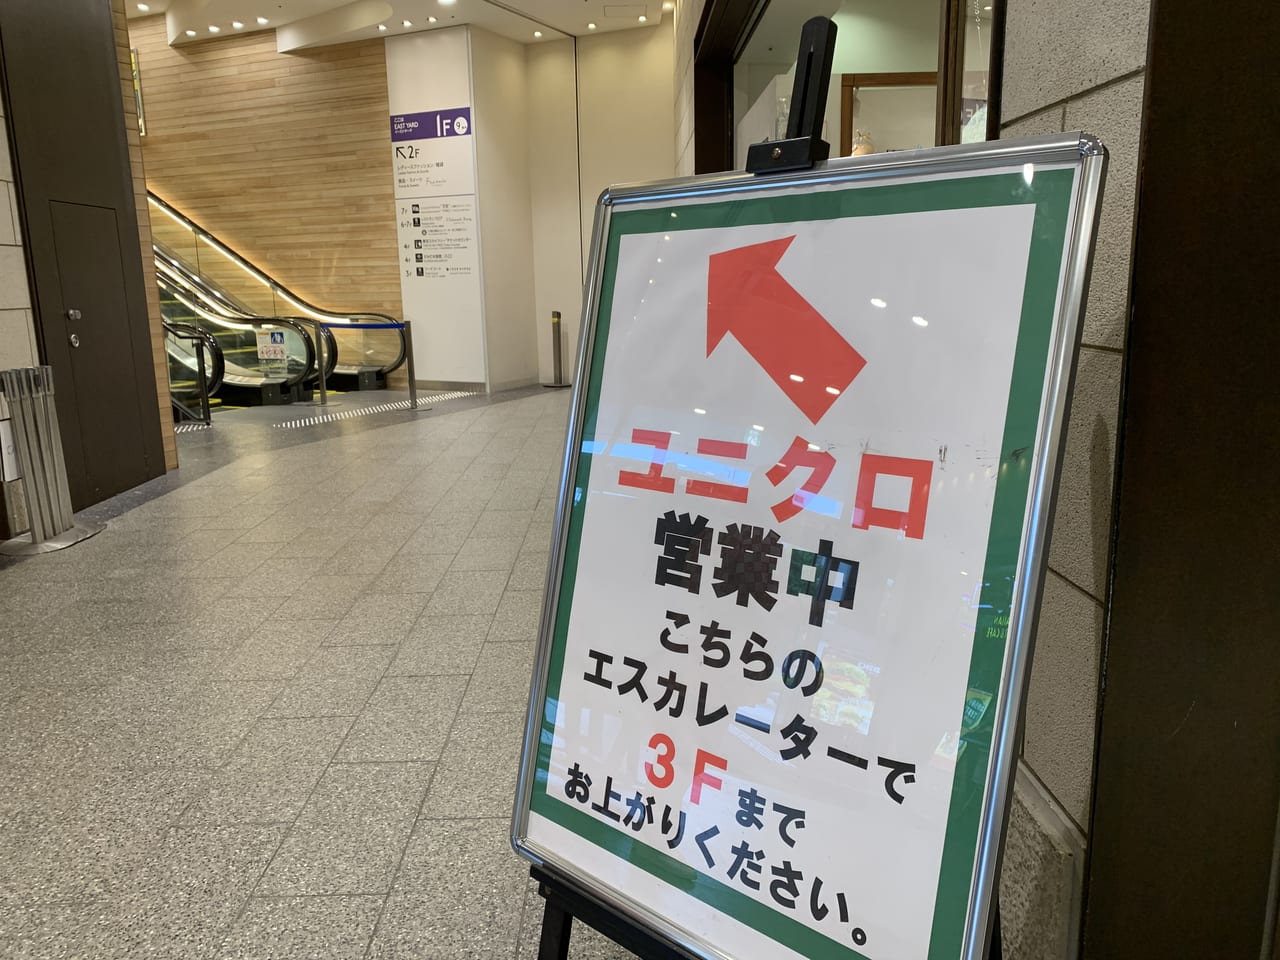 墨田区 速報 ソラマチのユニクロなどの一部店舗が営業再開しています 号外net 墨田区